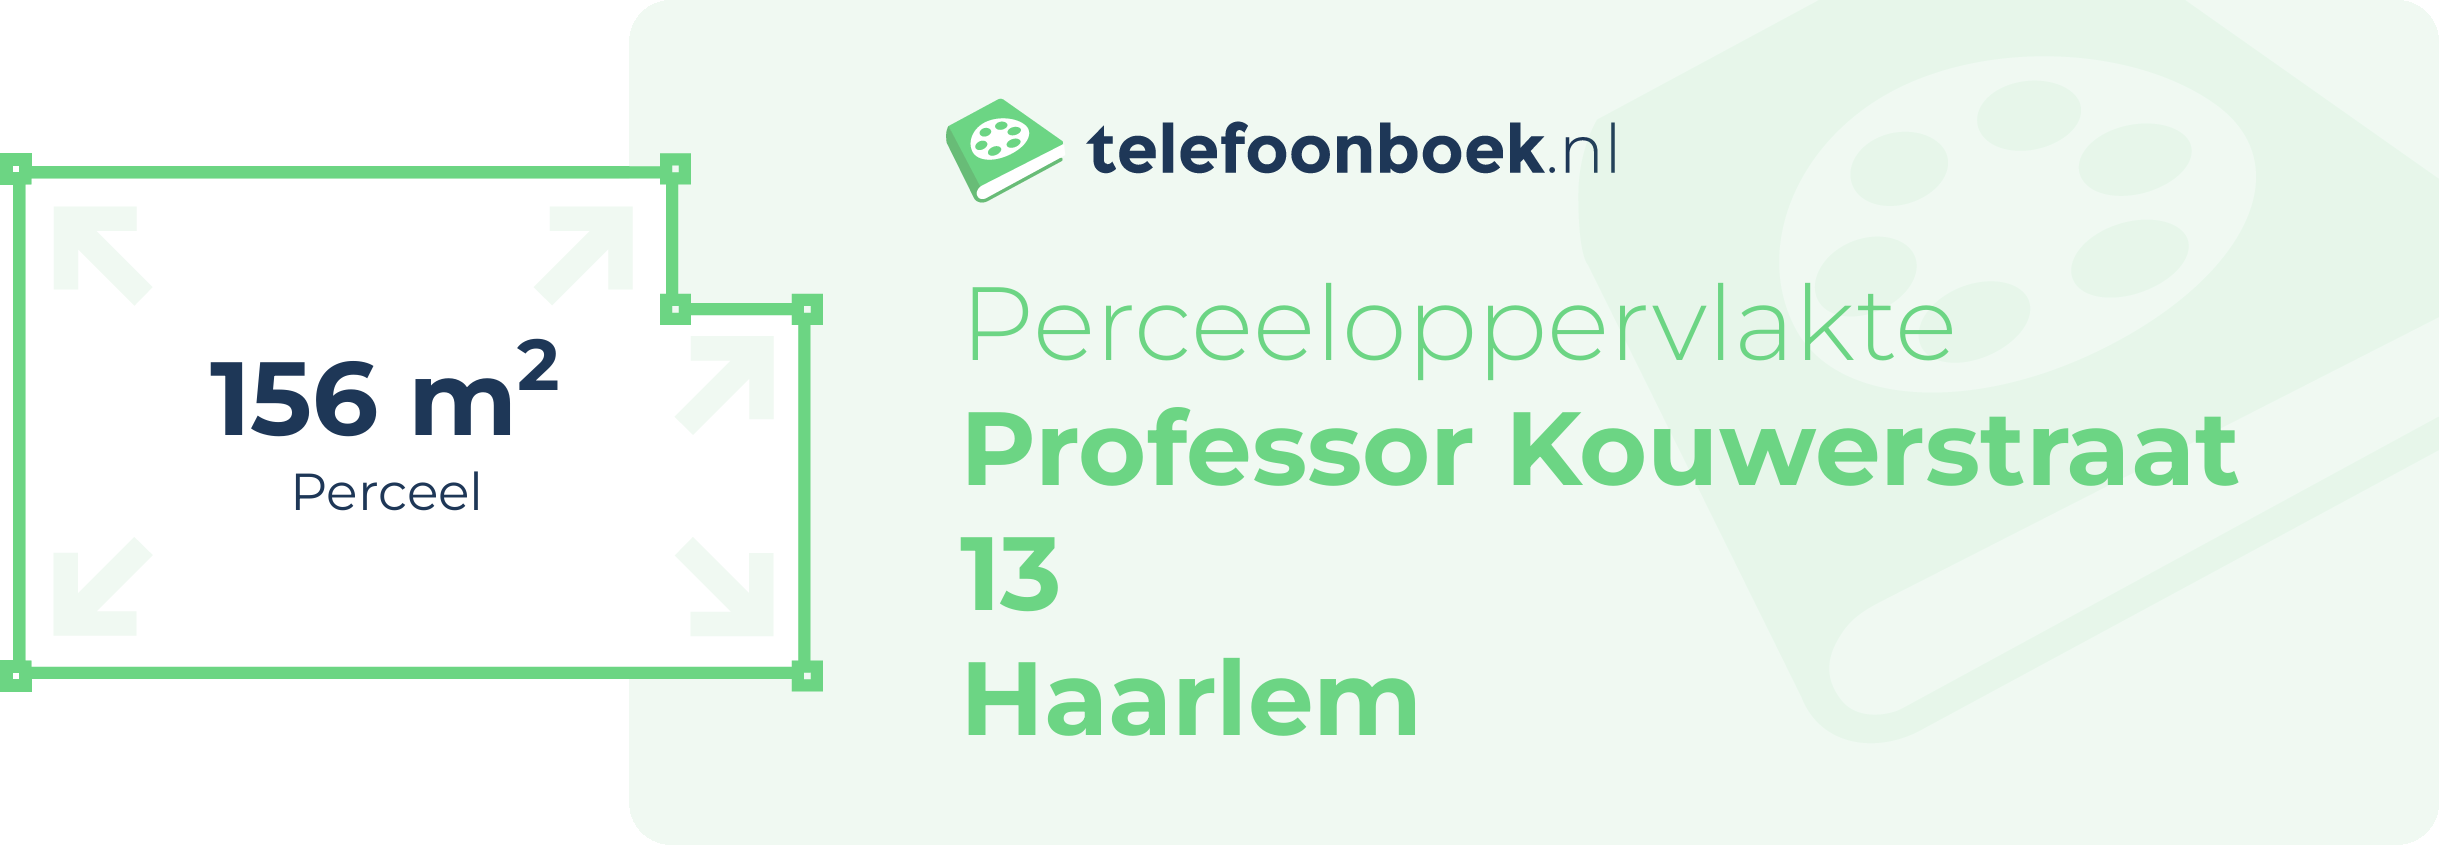 Perceeloppervlakte Professor Kouwerstraat 13 Haarlem